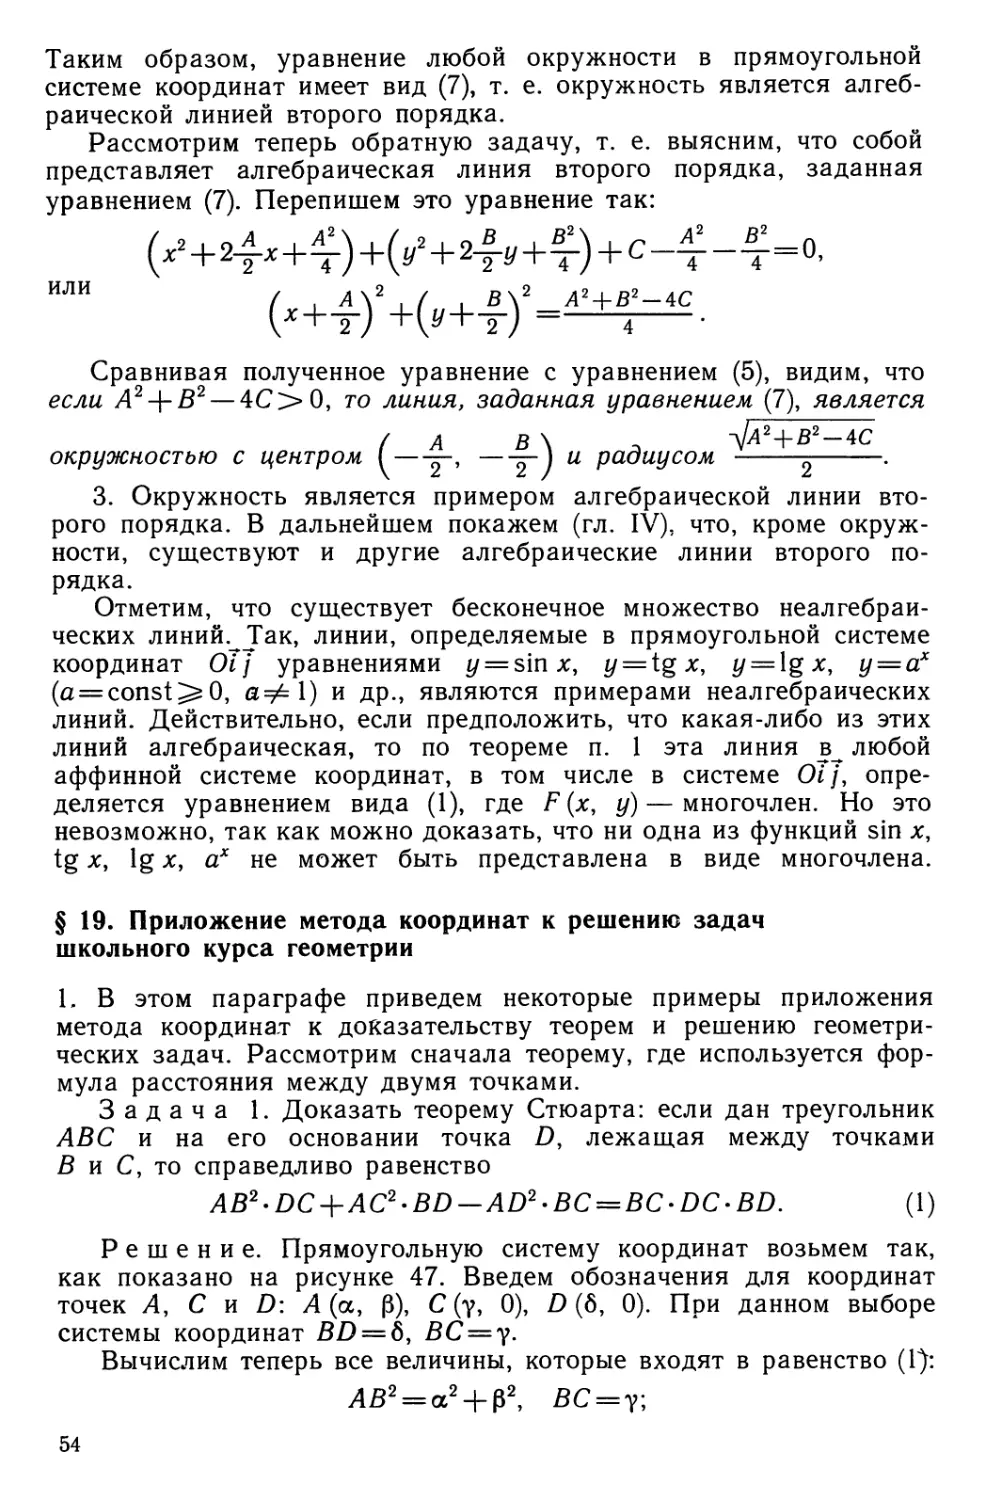 § 19. Приложение метода координат к решению задач школьного курса геометрии